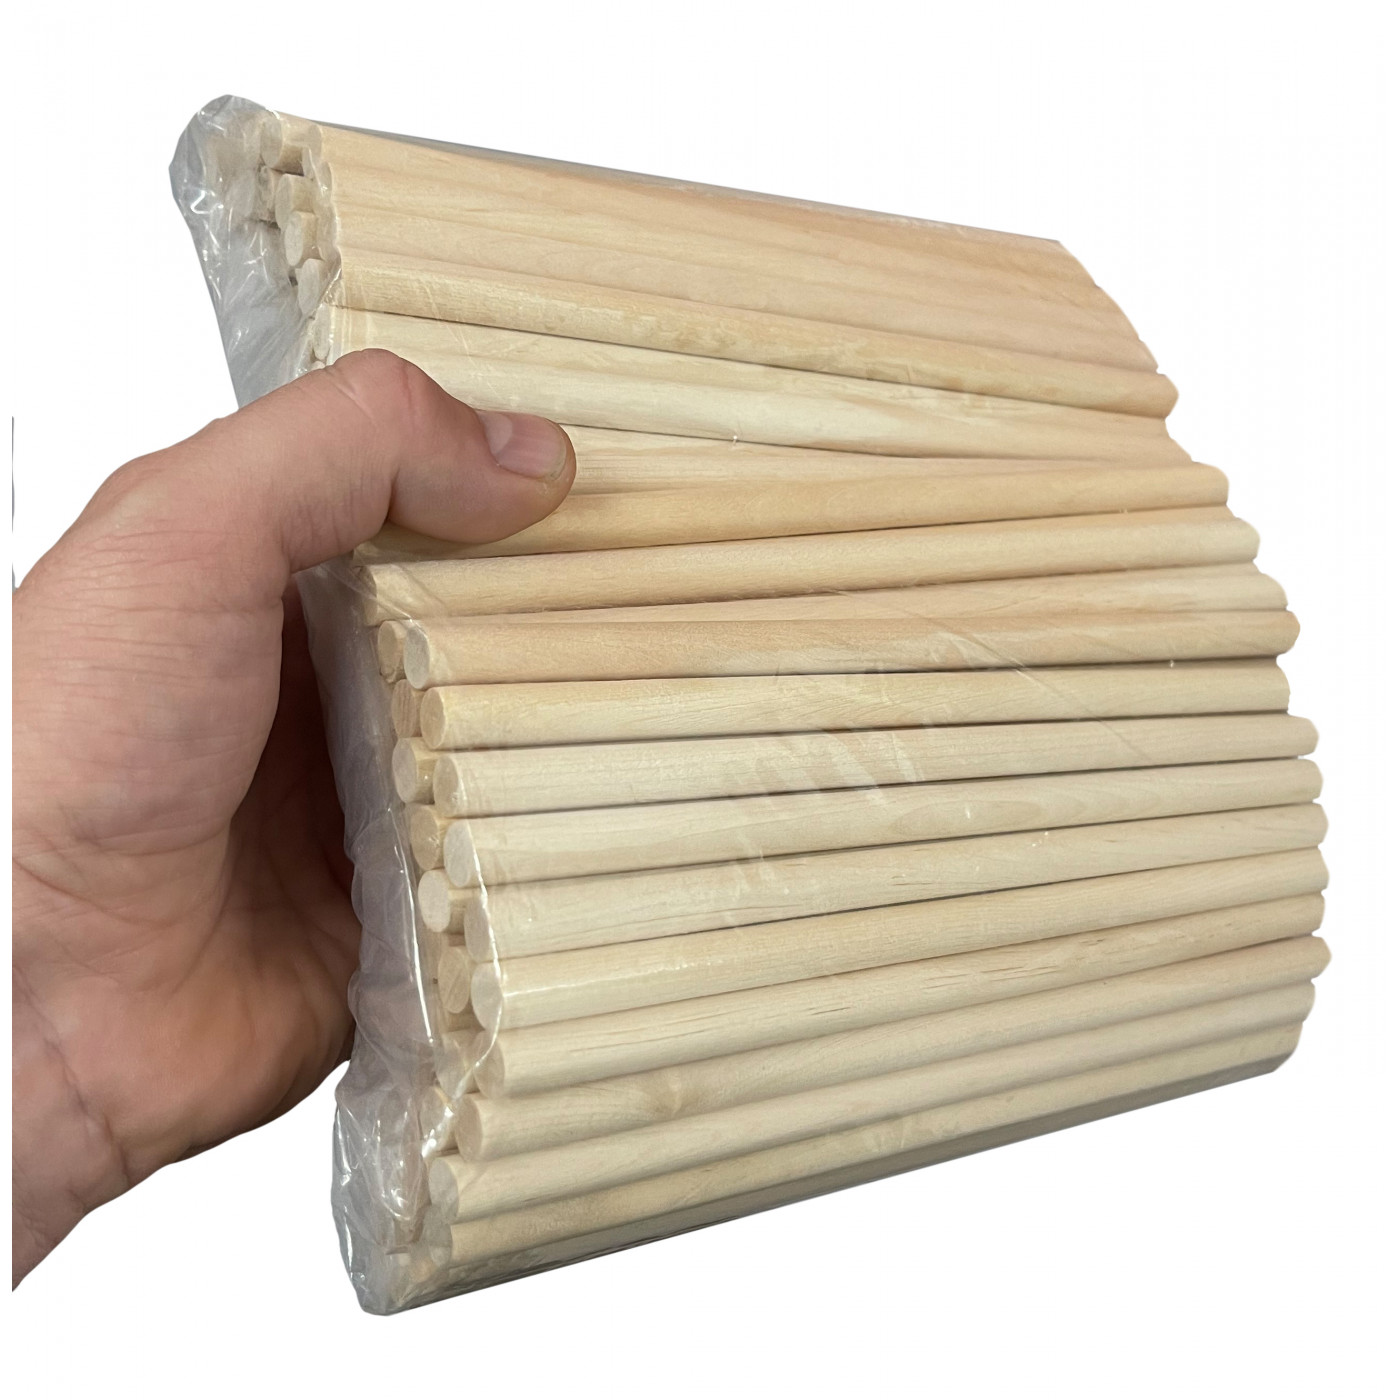 Conjunto de 100 varetas de madeira (30 cm de comprimento, 10 mm